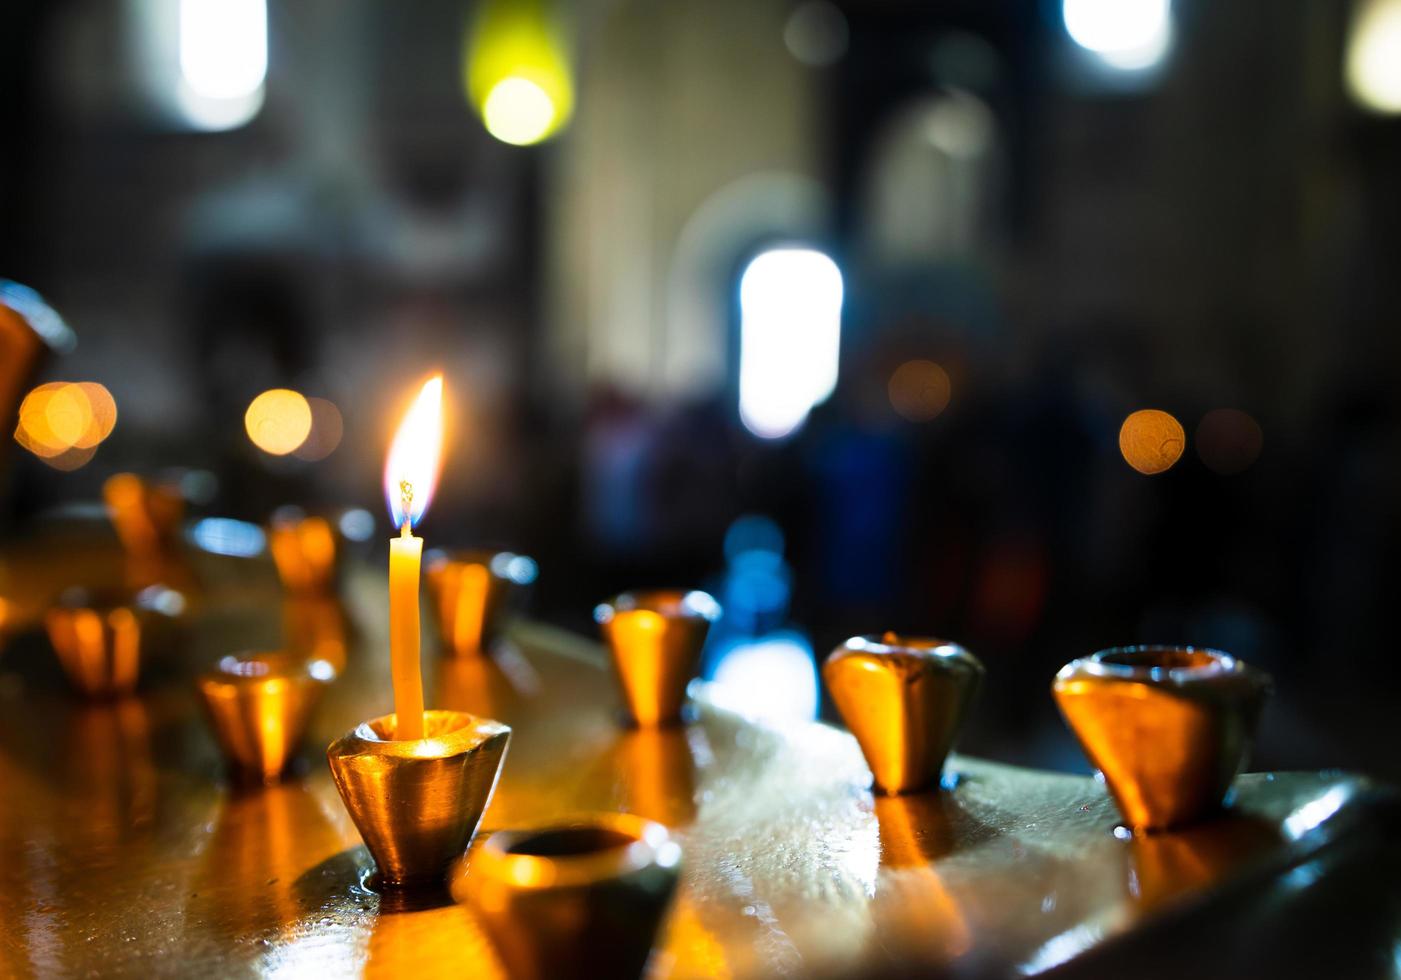 bougies dans une église photo